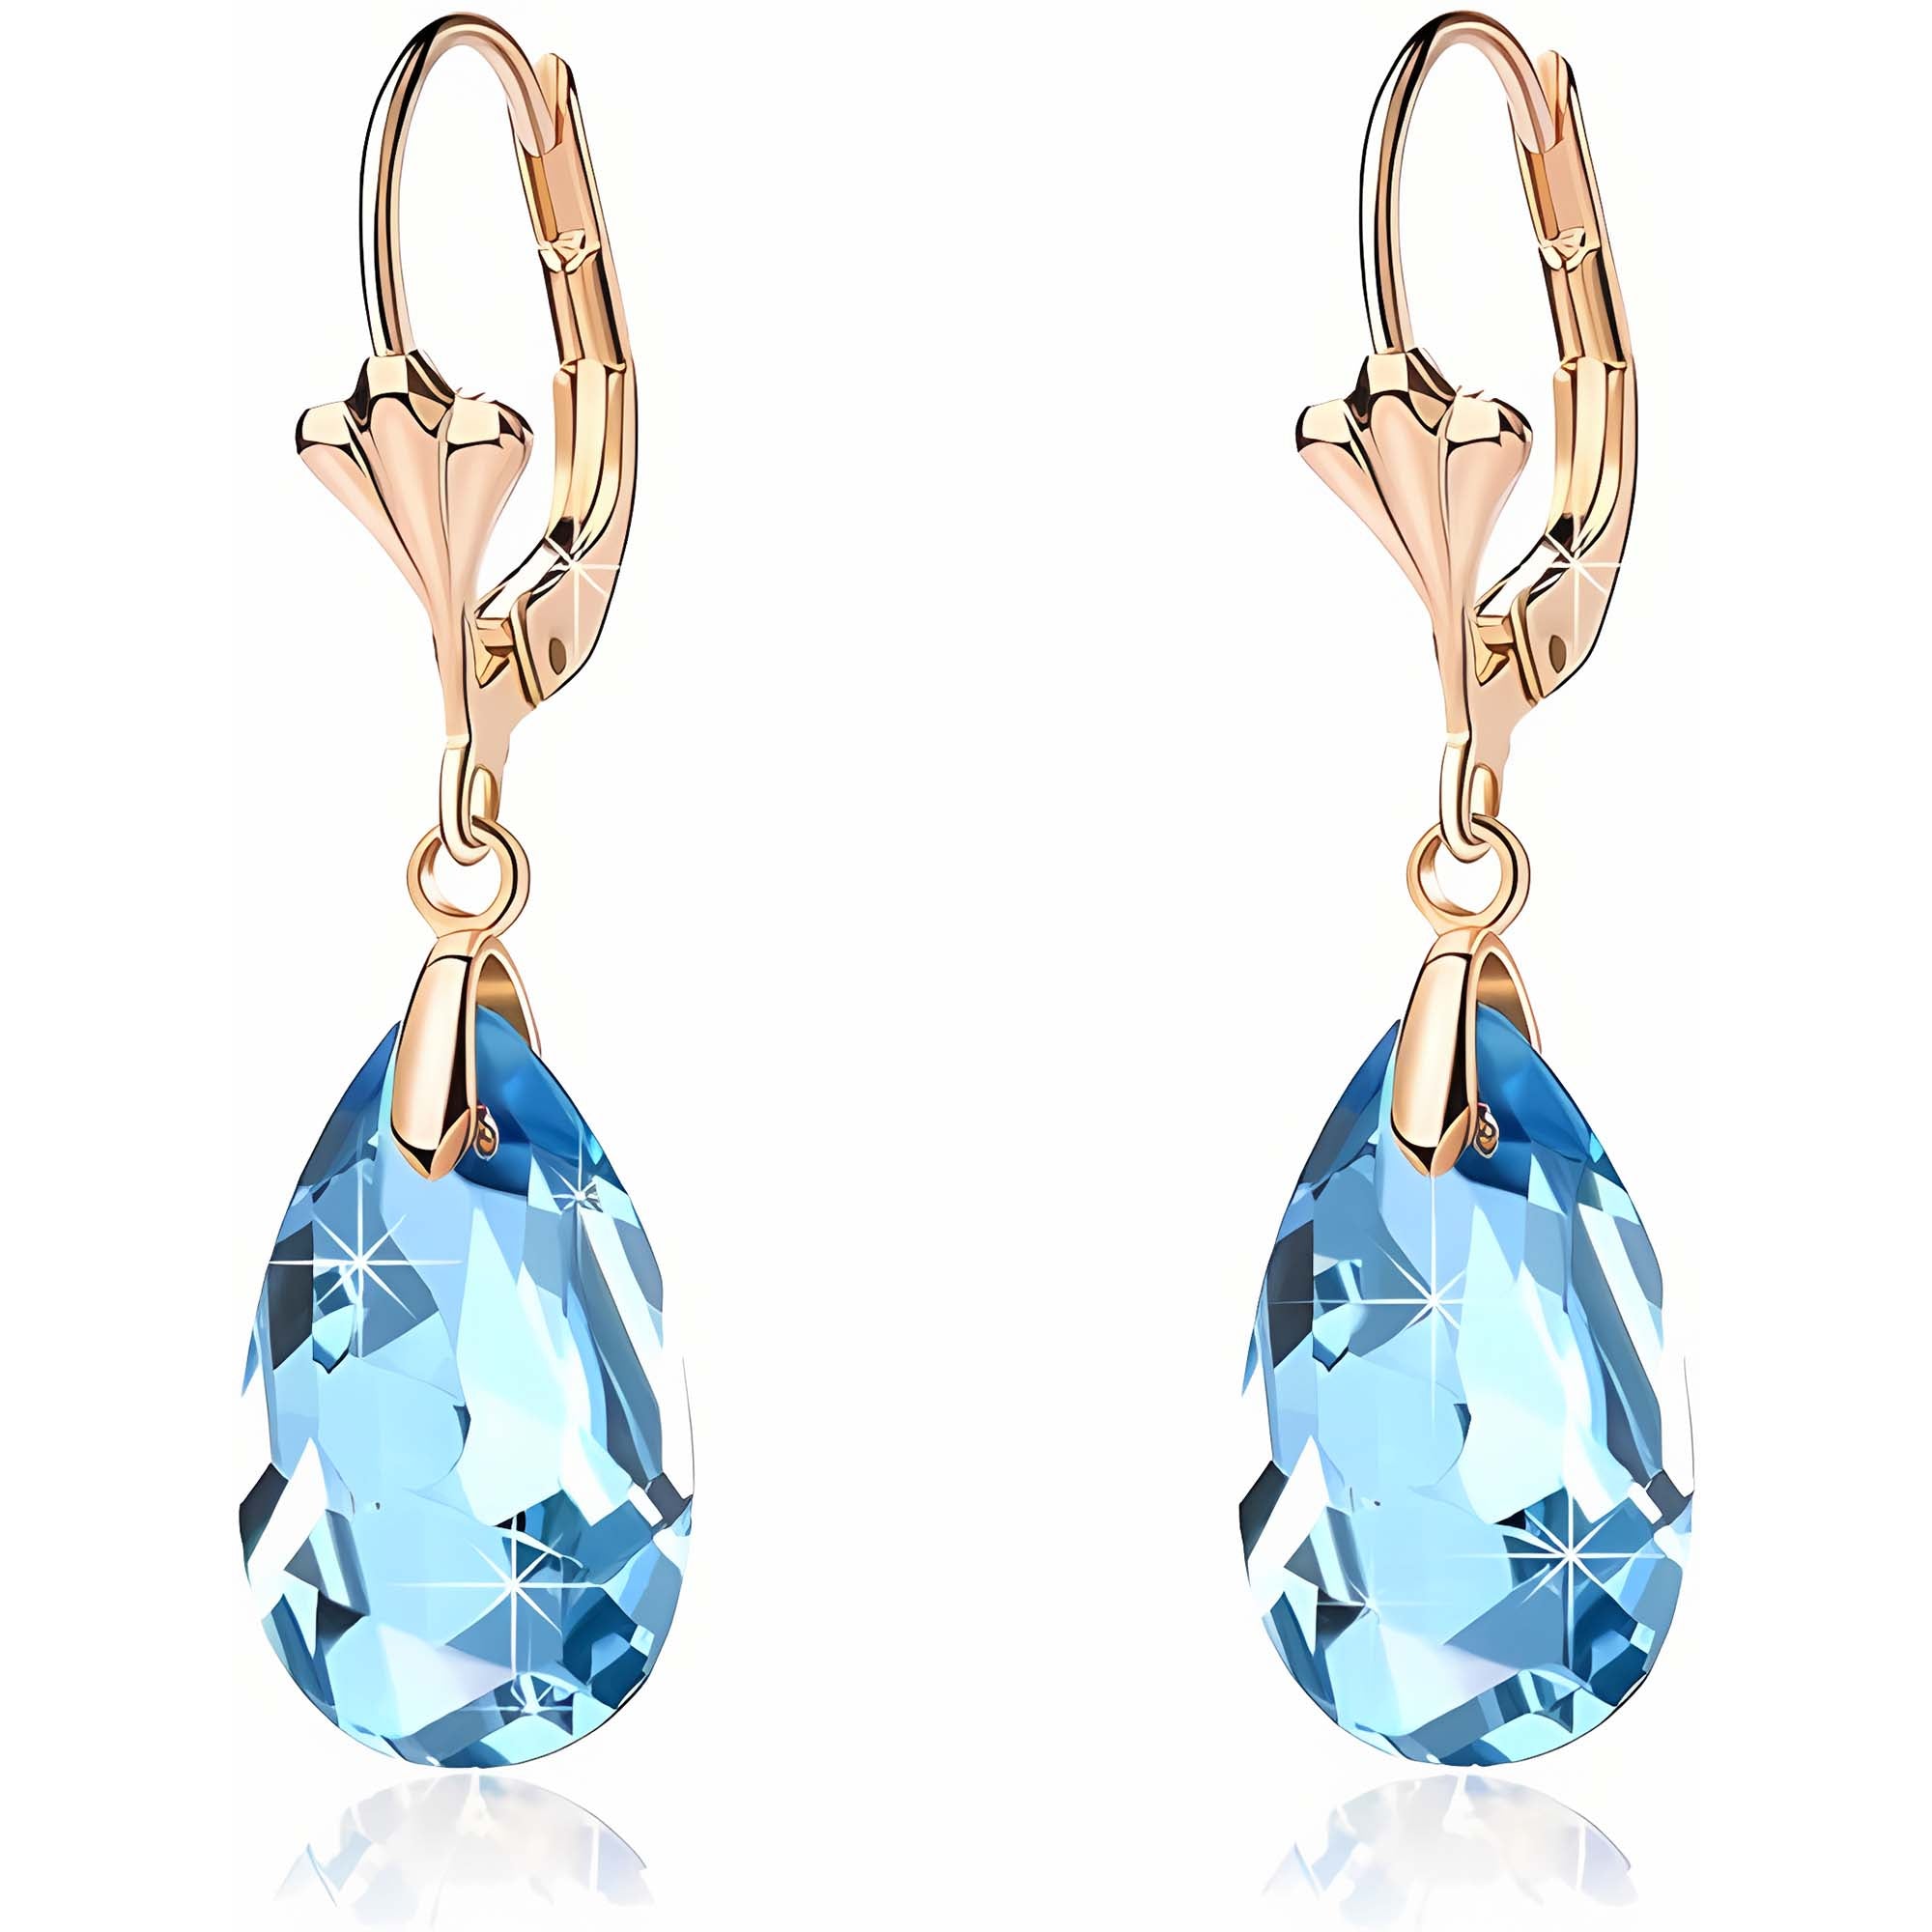 Austrian Crystal Teardrop Leverback Dangle Earrings for Women Fashion 14K Gold Plated Hypoallergenic Jewelry